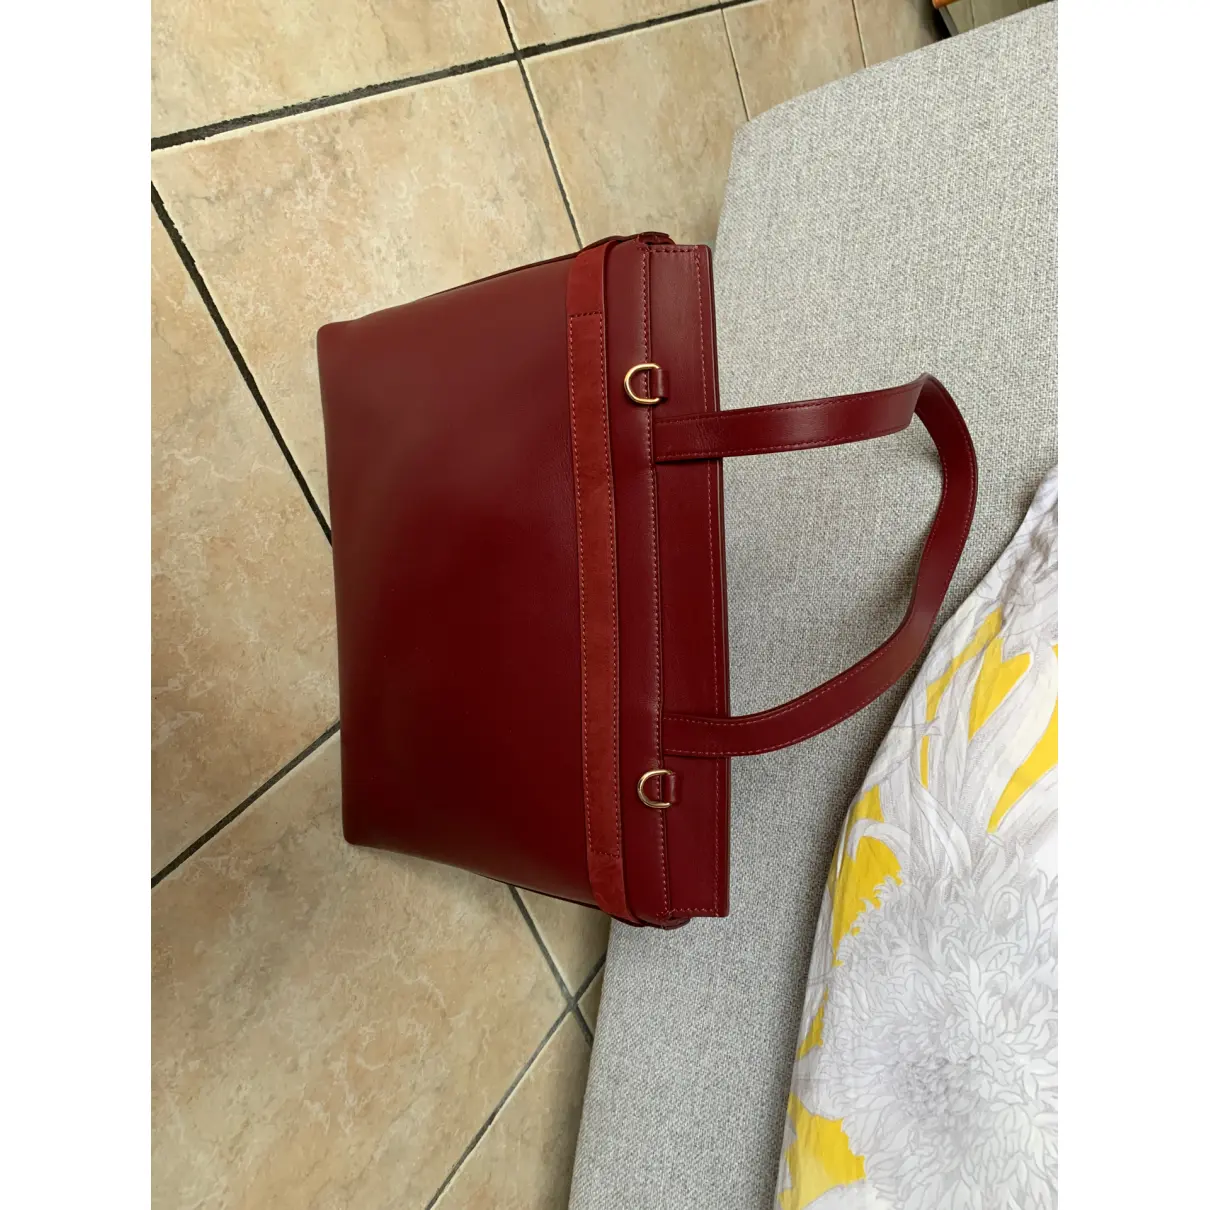 Buy Léo et Violette Leather handbag online